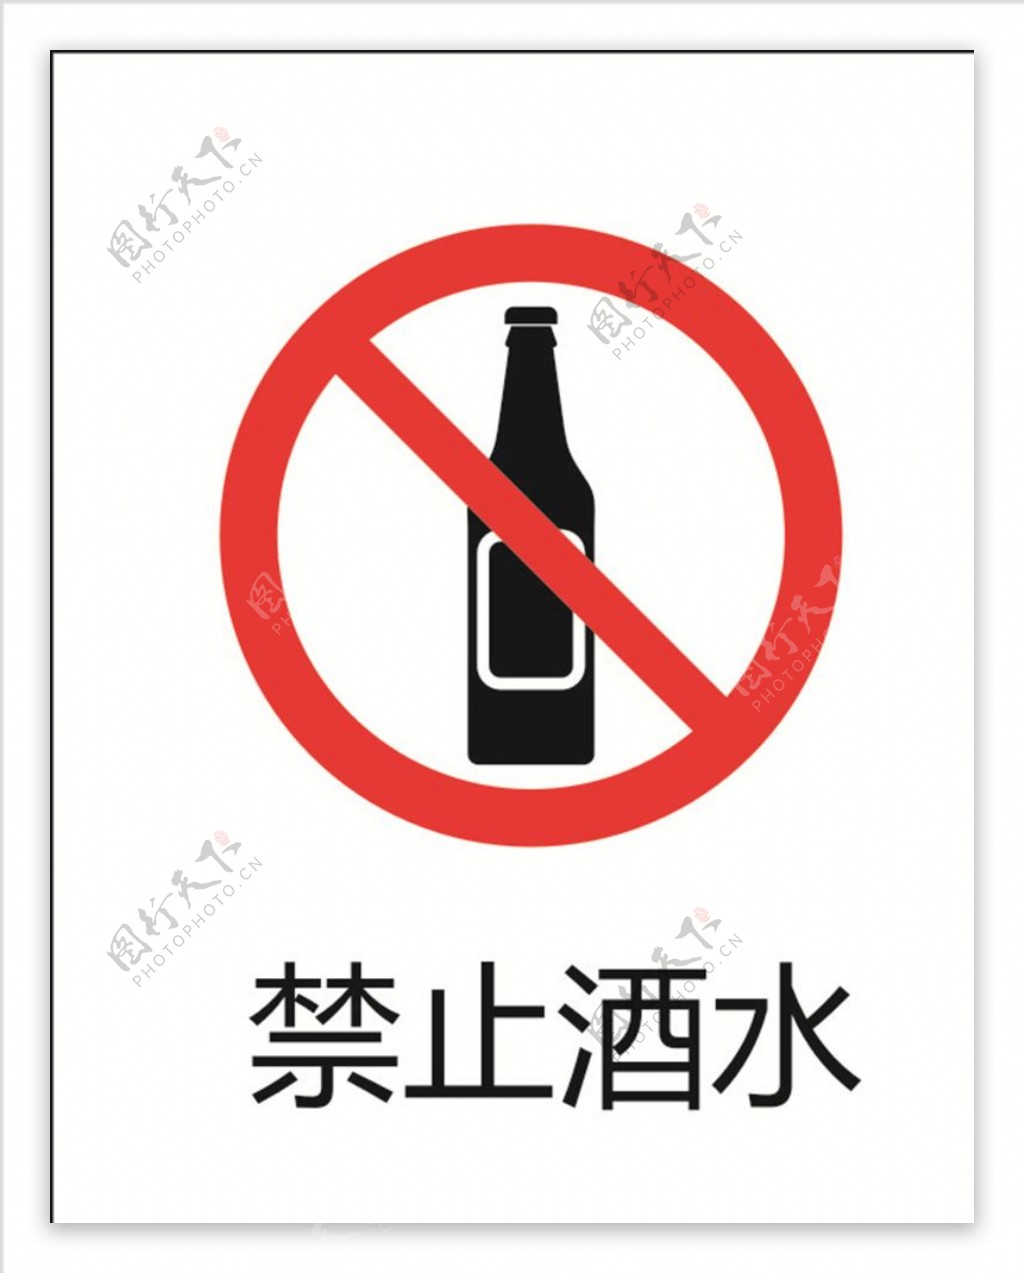 禁止饮酒